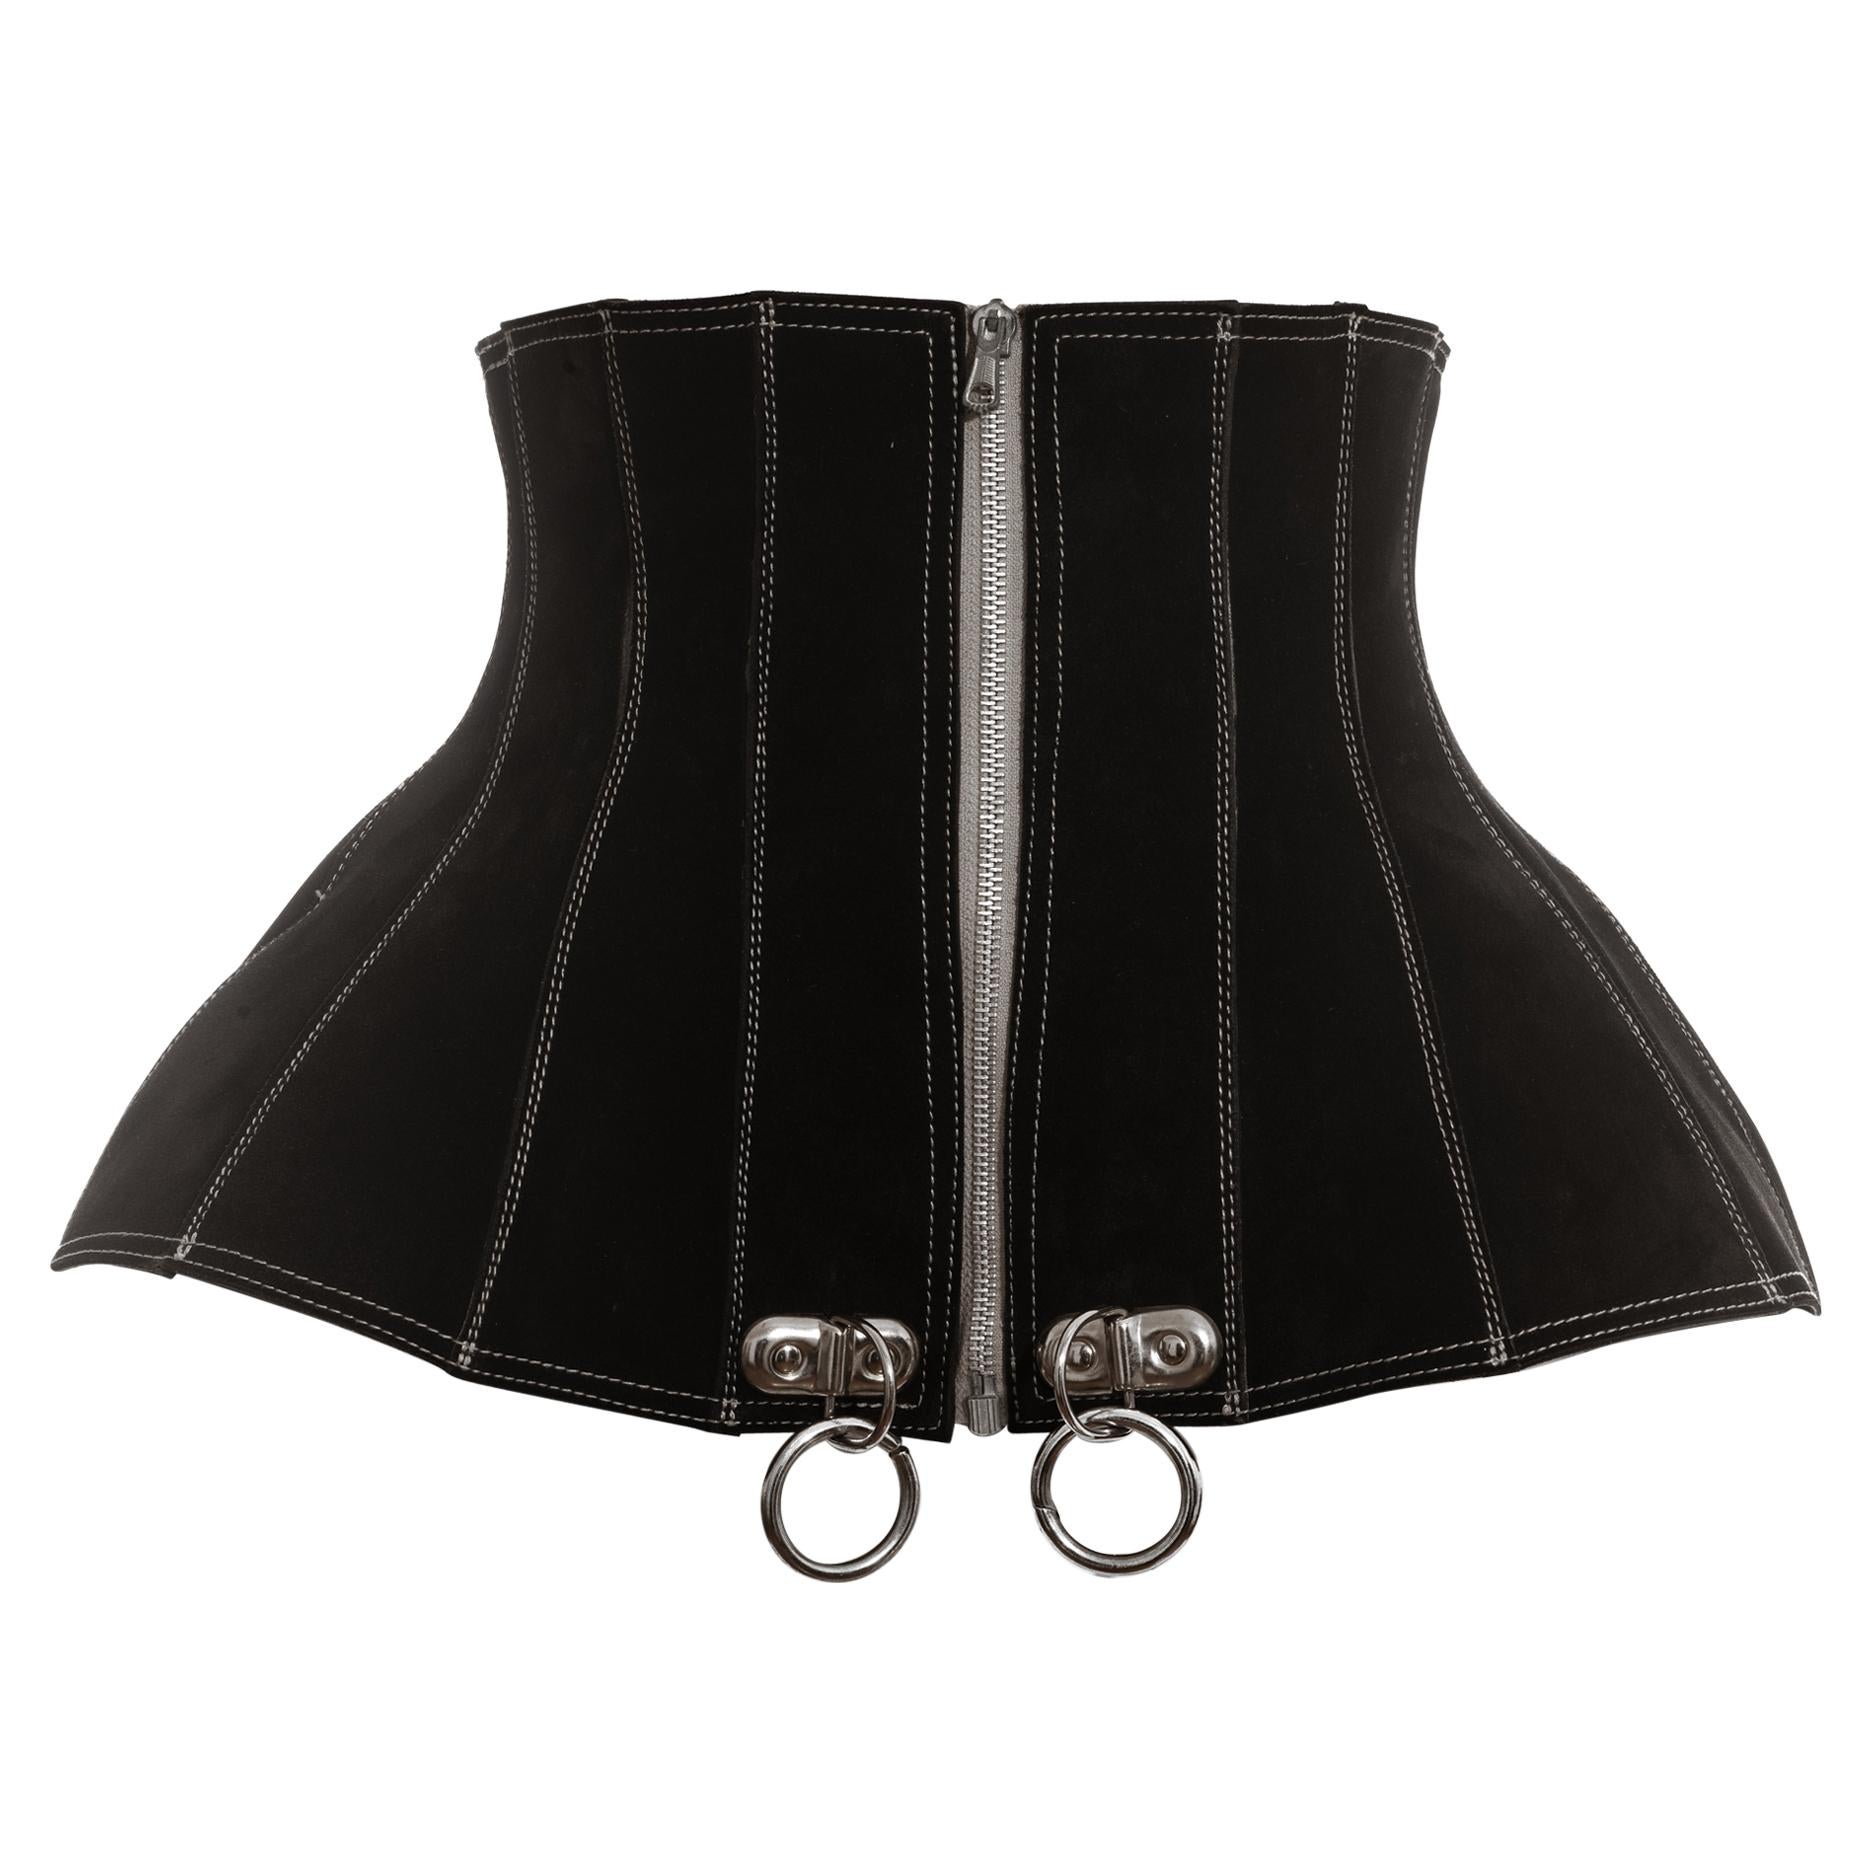 Jean Paul Gaultier black suede zip up corset, fw 1987